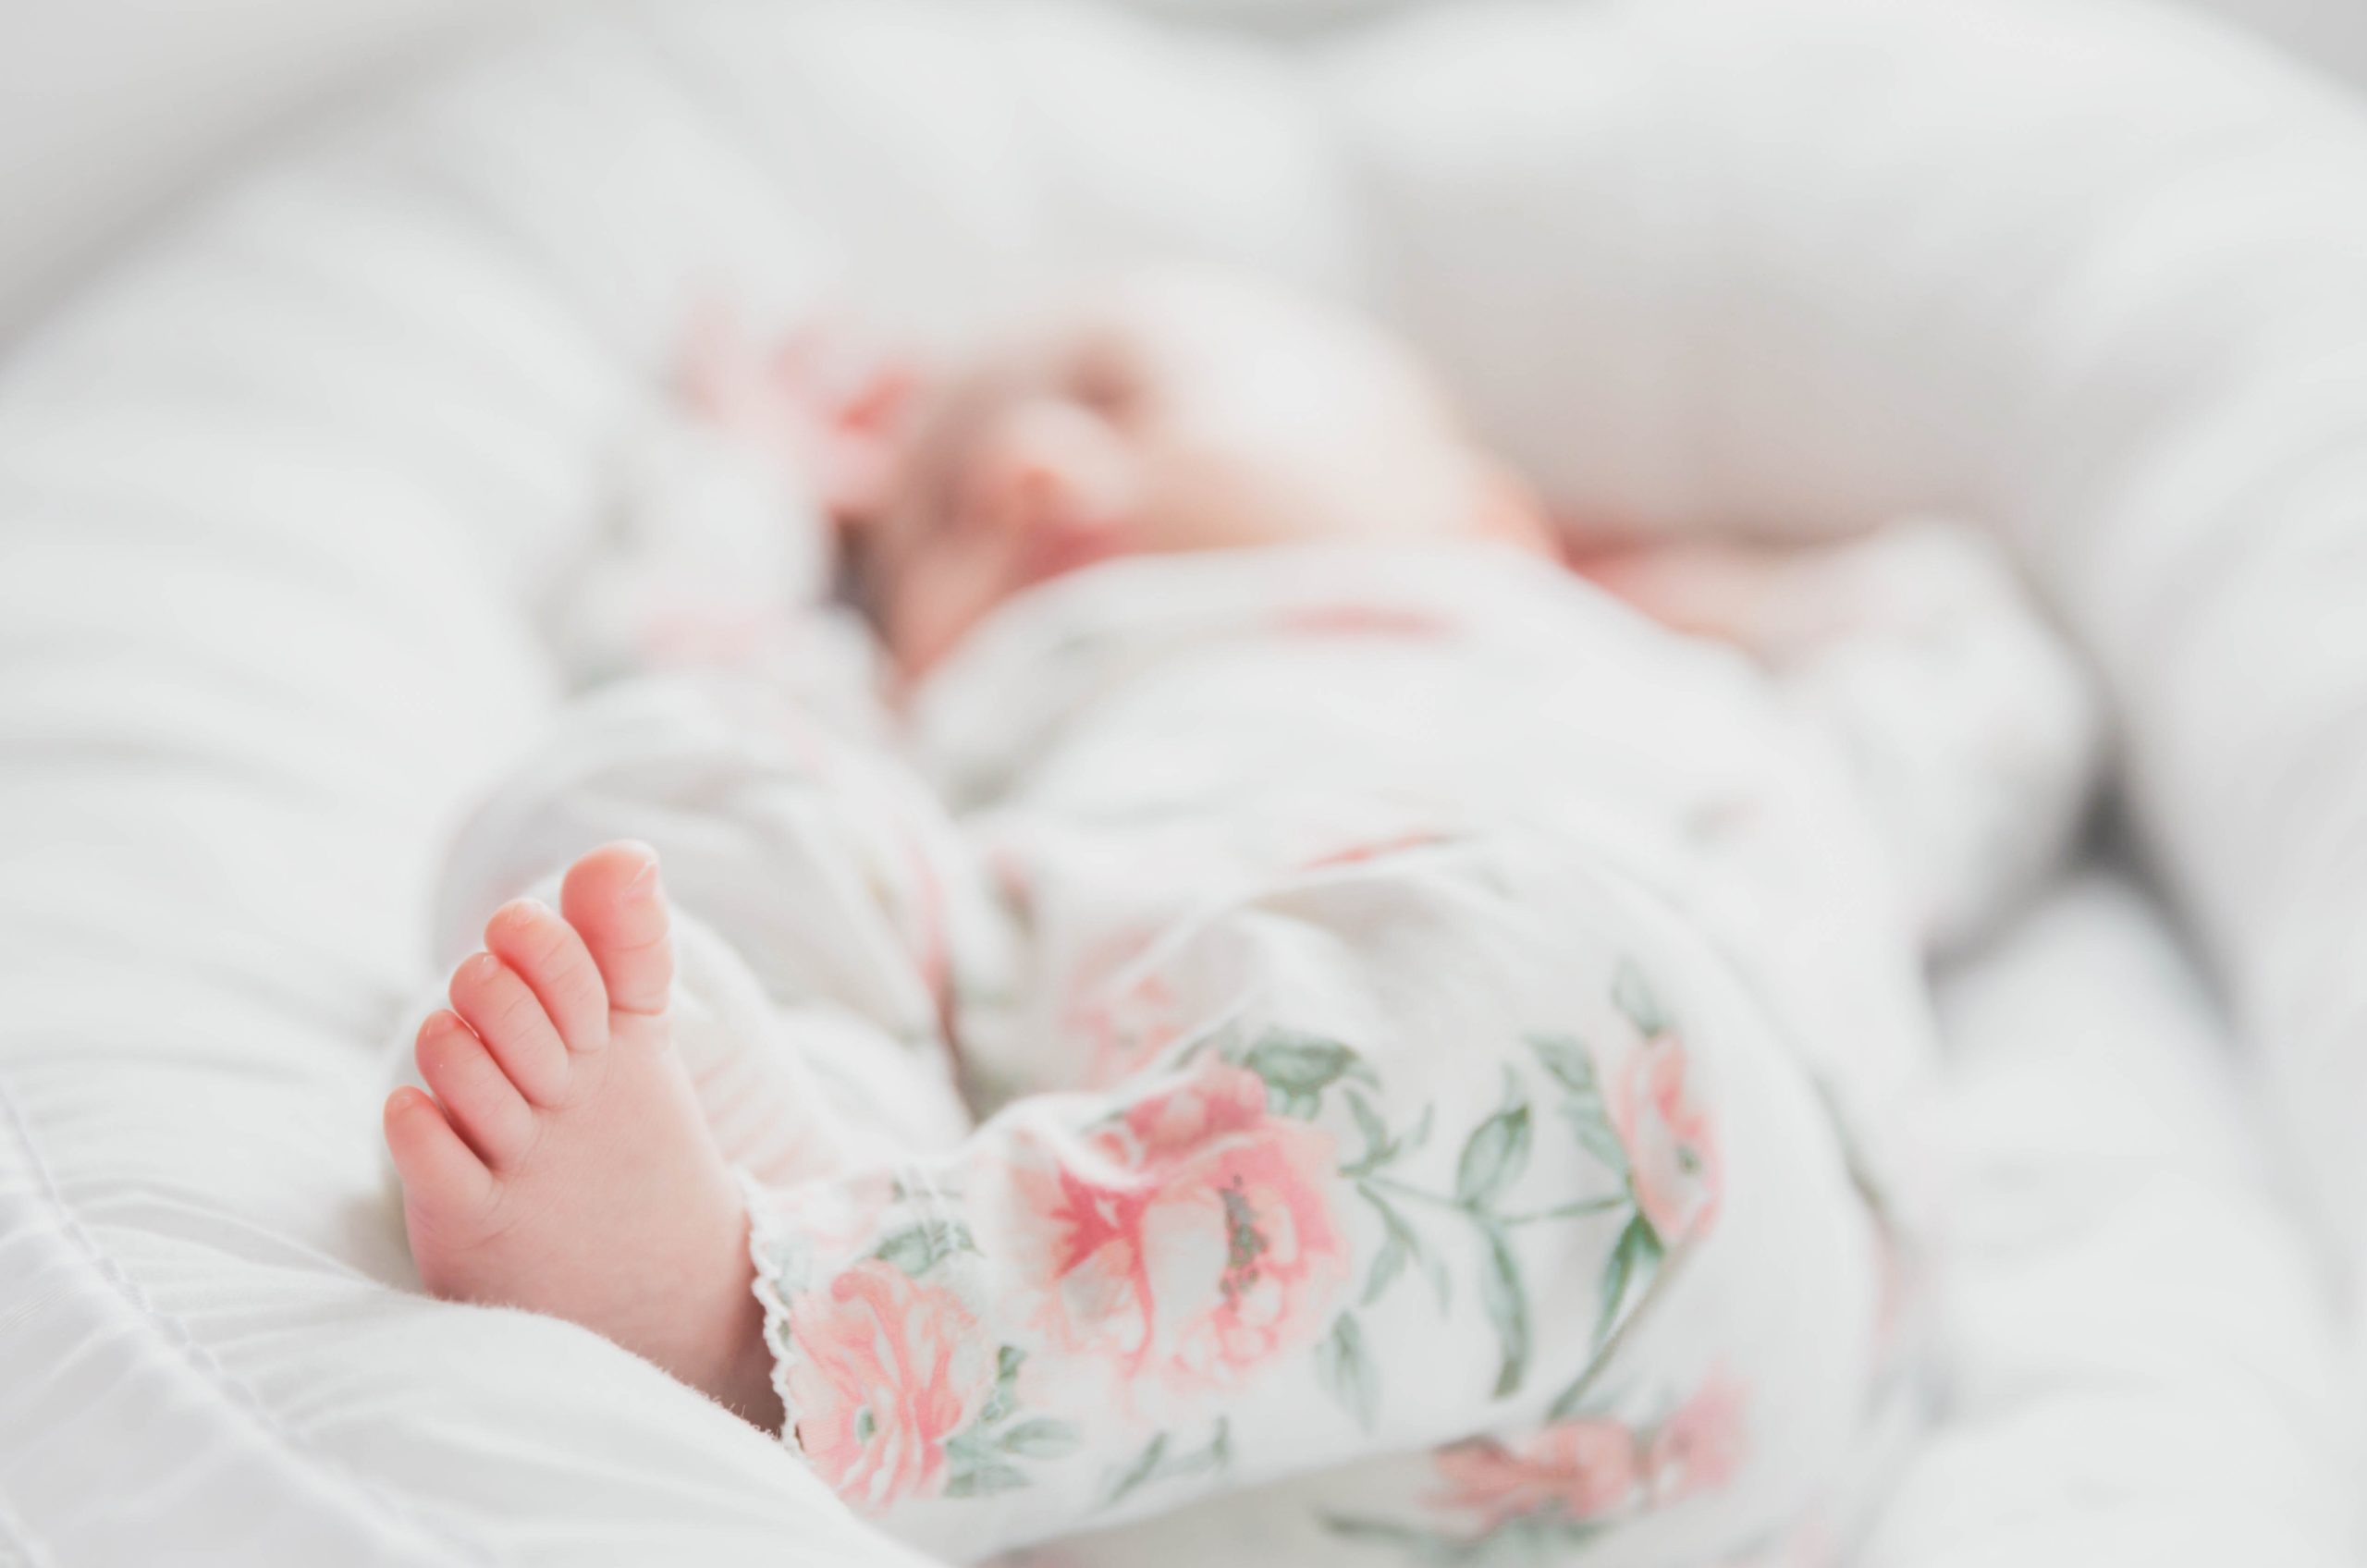 Liste de naissance: les indispensables et les plus facultatifs · L'Arène  Mère